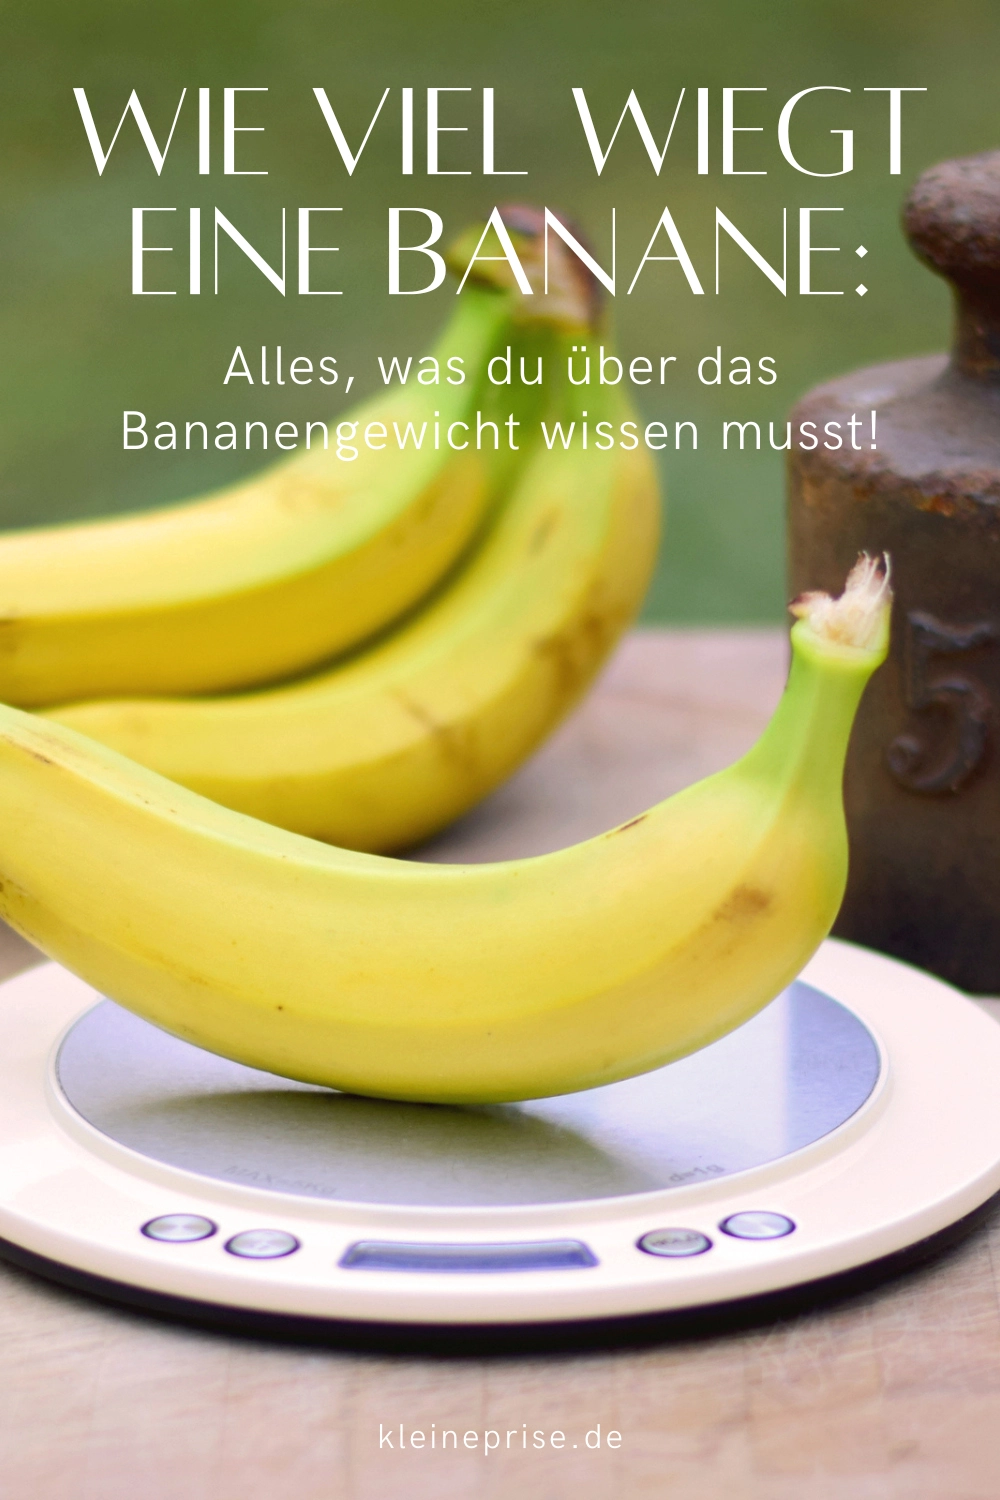 Pin es bei Pinterest: Wie viel wiegt eine Banane?